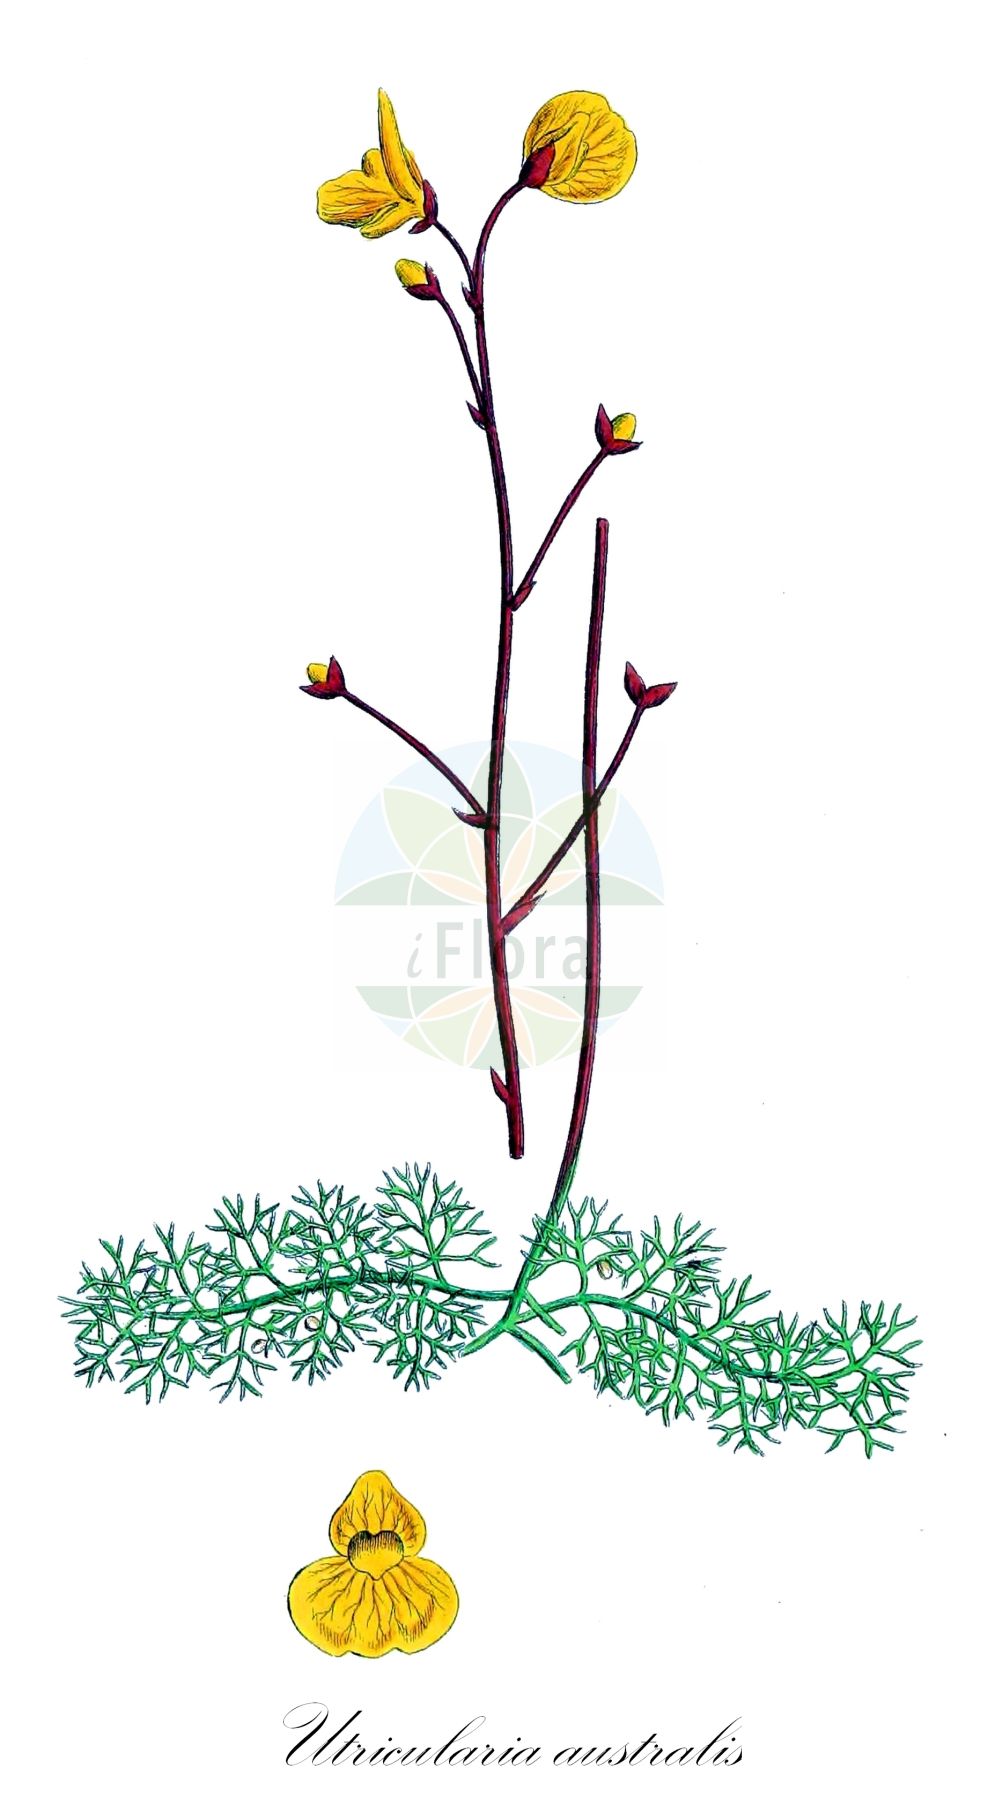 Historische Abbildung von Utricularia australis (Verkannter Wasserschlauch - Bladderwort). Das Bild zeigt Blatt, Bluete, Frucht und Same. ---- Historical Drawing of Utricularia australis (Verkannter Wasserschlauch - Bladderwort). The image is showing leaf, flower, fruit and seed.(Utricularia australis,Verkannter Wasserschlauch,Bladderwort,Utricularia australis,Utricularia dubia,Utricularia jankae,Utricularia neglecta,Verkannter Wasserschlauch,Suedlicher Wasserschlauch,Übersehener Wasserschlauch,Bladderwort,Western Bladderwort,Utricularia,Wasserschlauch,Bladderwort,Lentibulariaceae,Wasserschlauchgewächse,Bladderwort family,Blatt,Bluete,Frucht,Same,leaf,flower,fruit,seed,Sowerby (1790-1813))